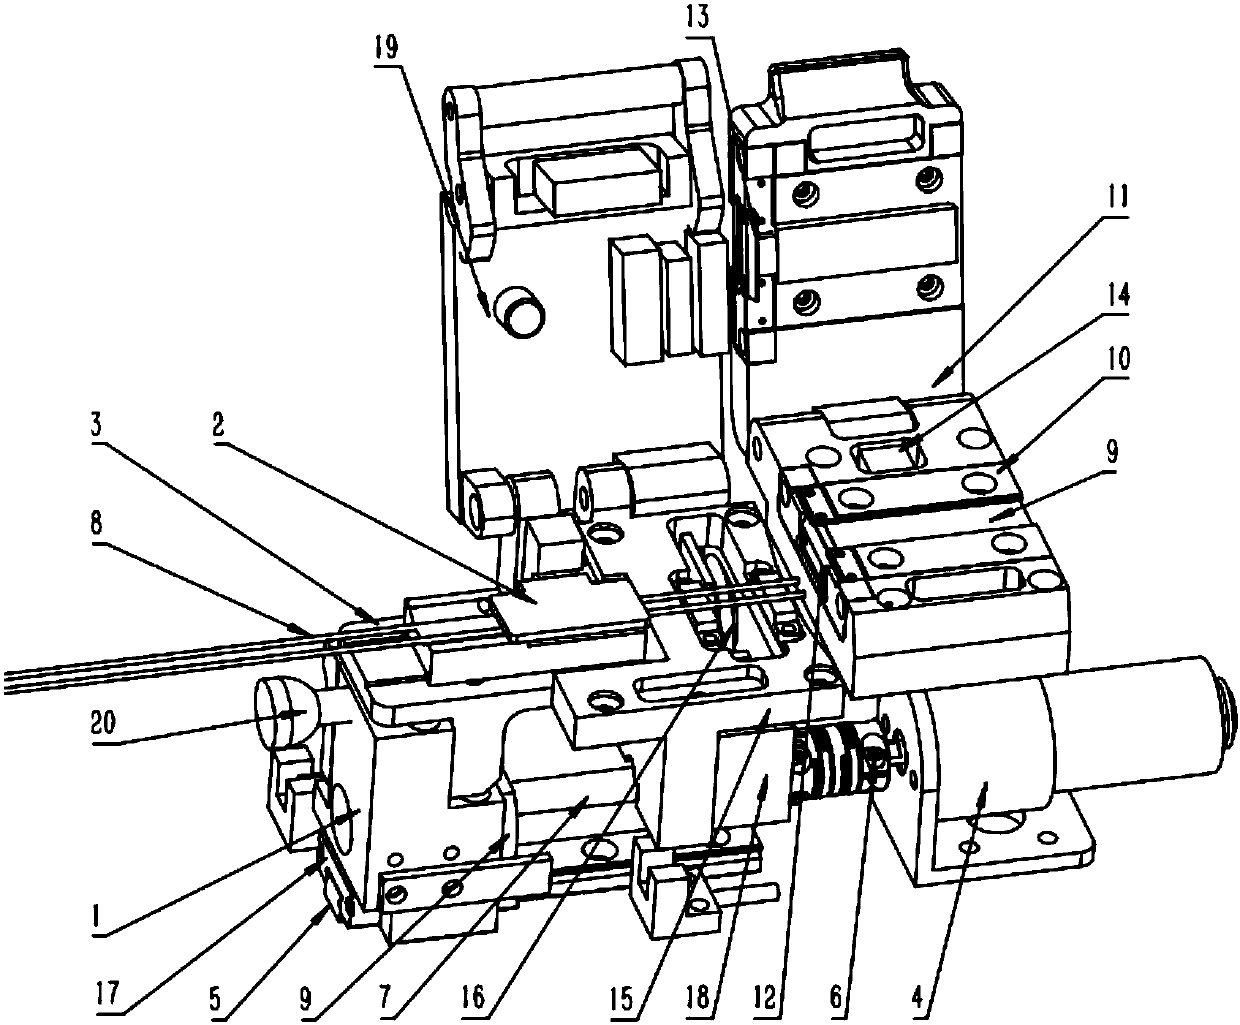 Automatic strip cutting machine of multiple optical fibers